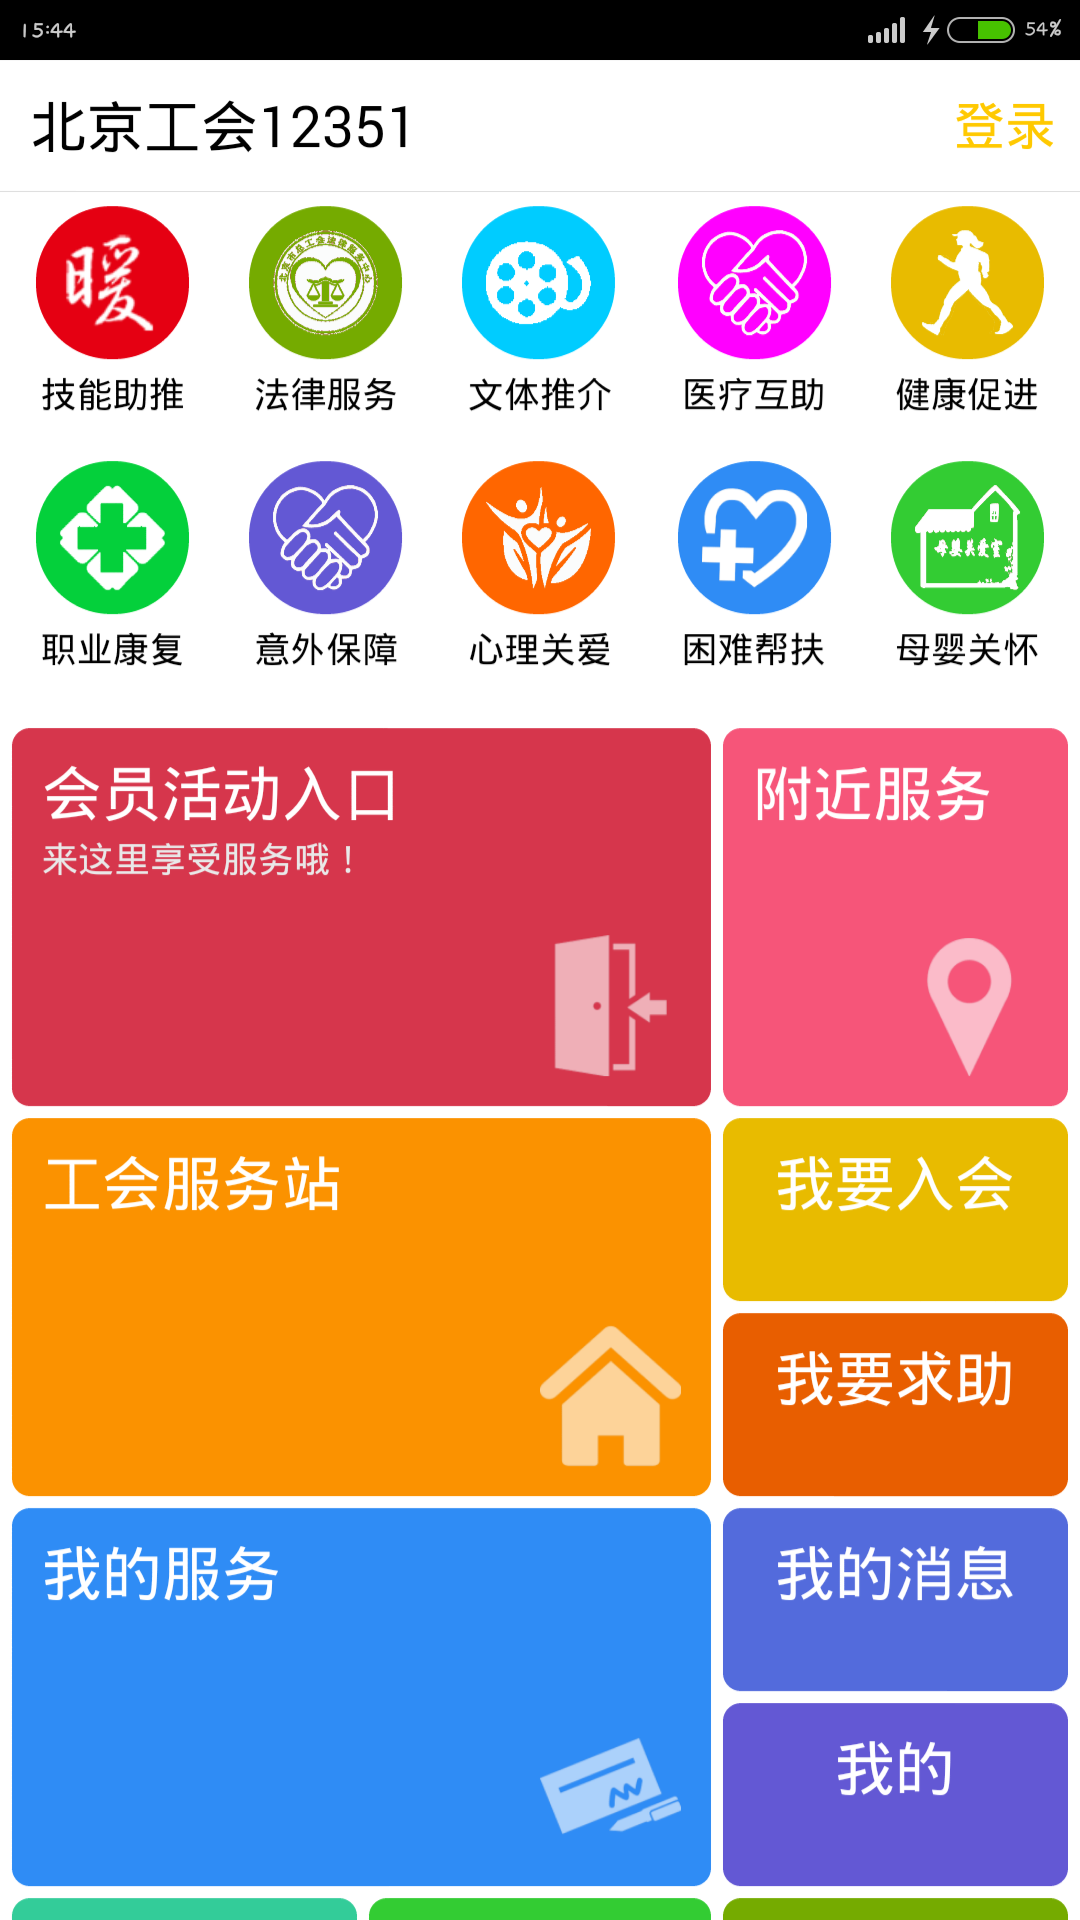 北京工会12351 iPhone版 v3.9.0 苹果越狱版2